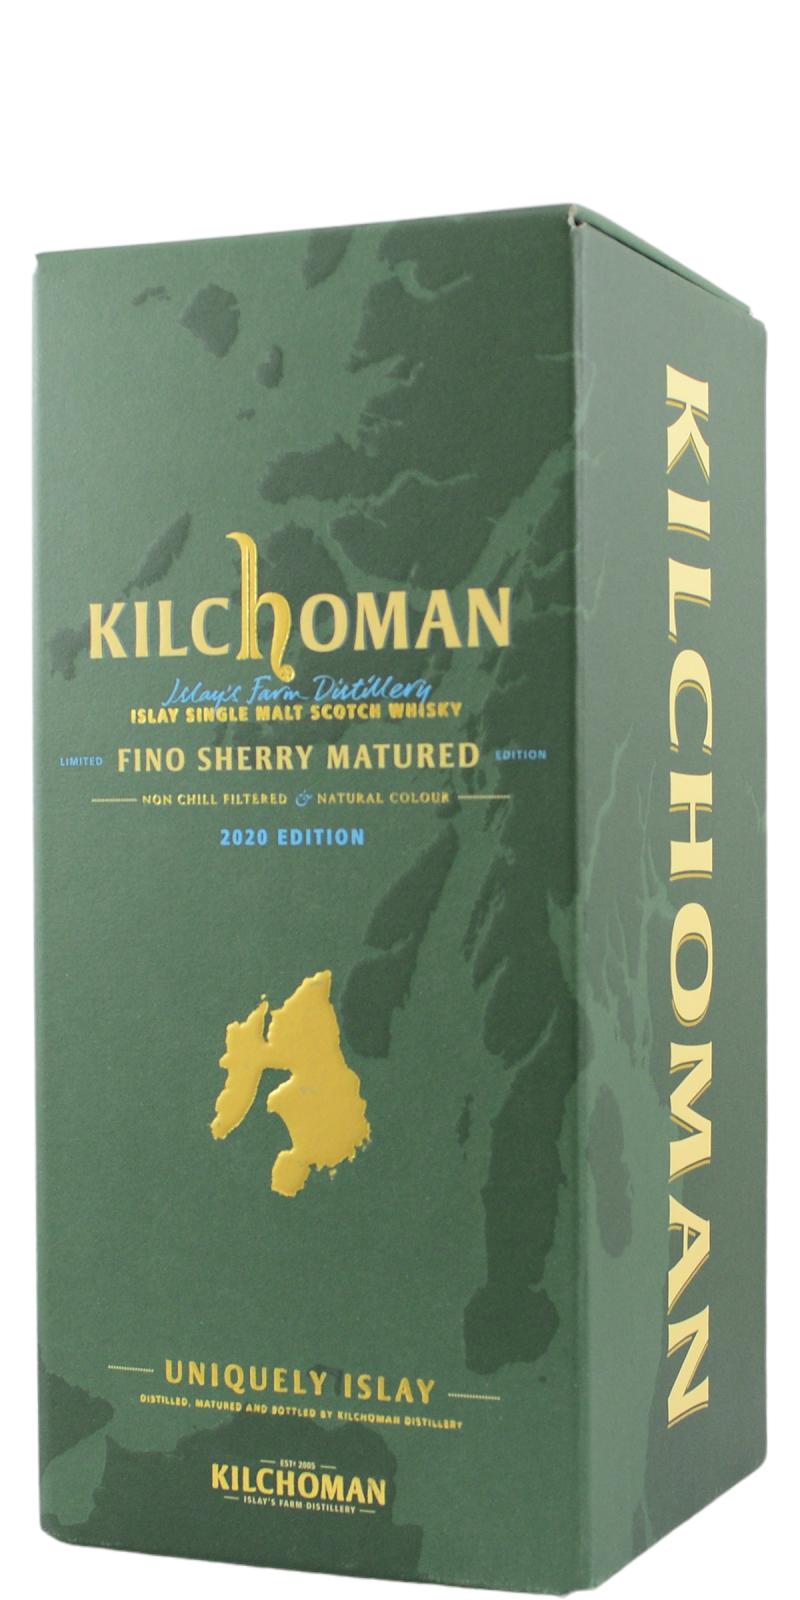 Kilchoman 2016